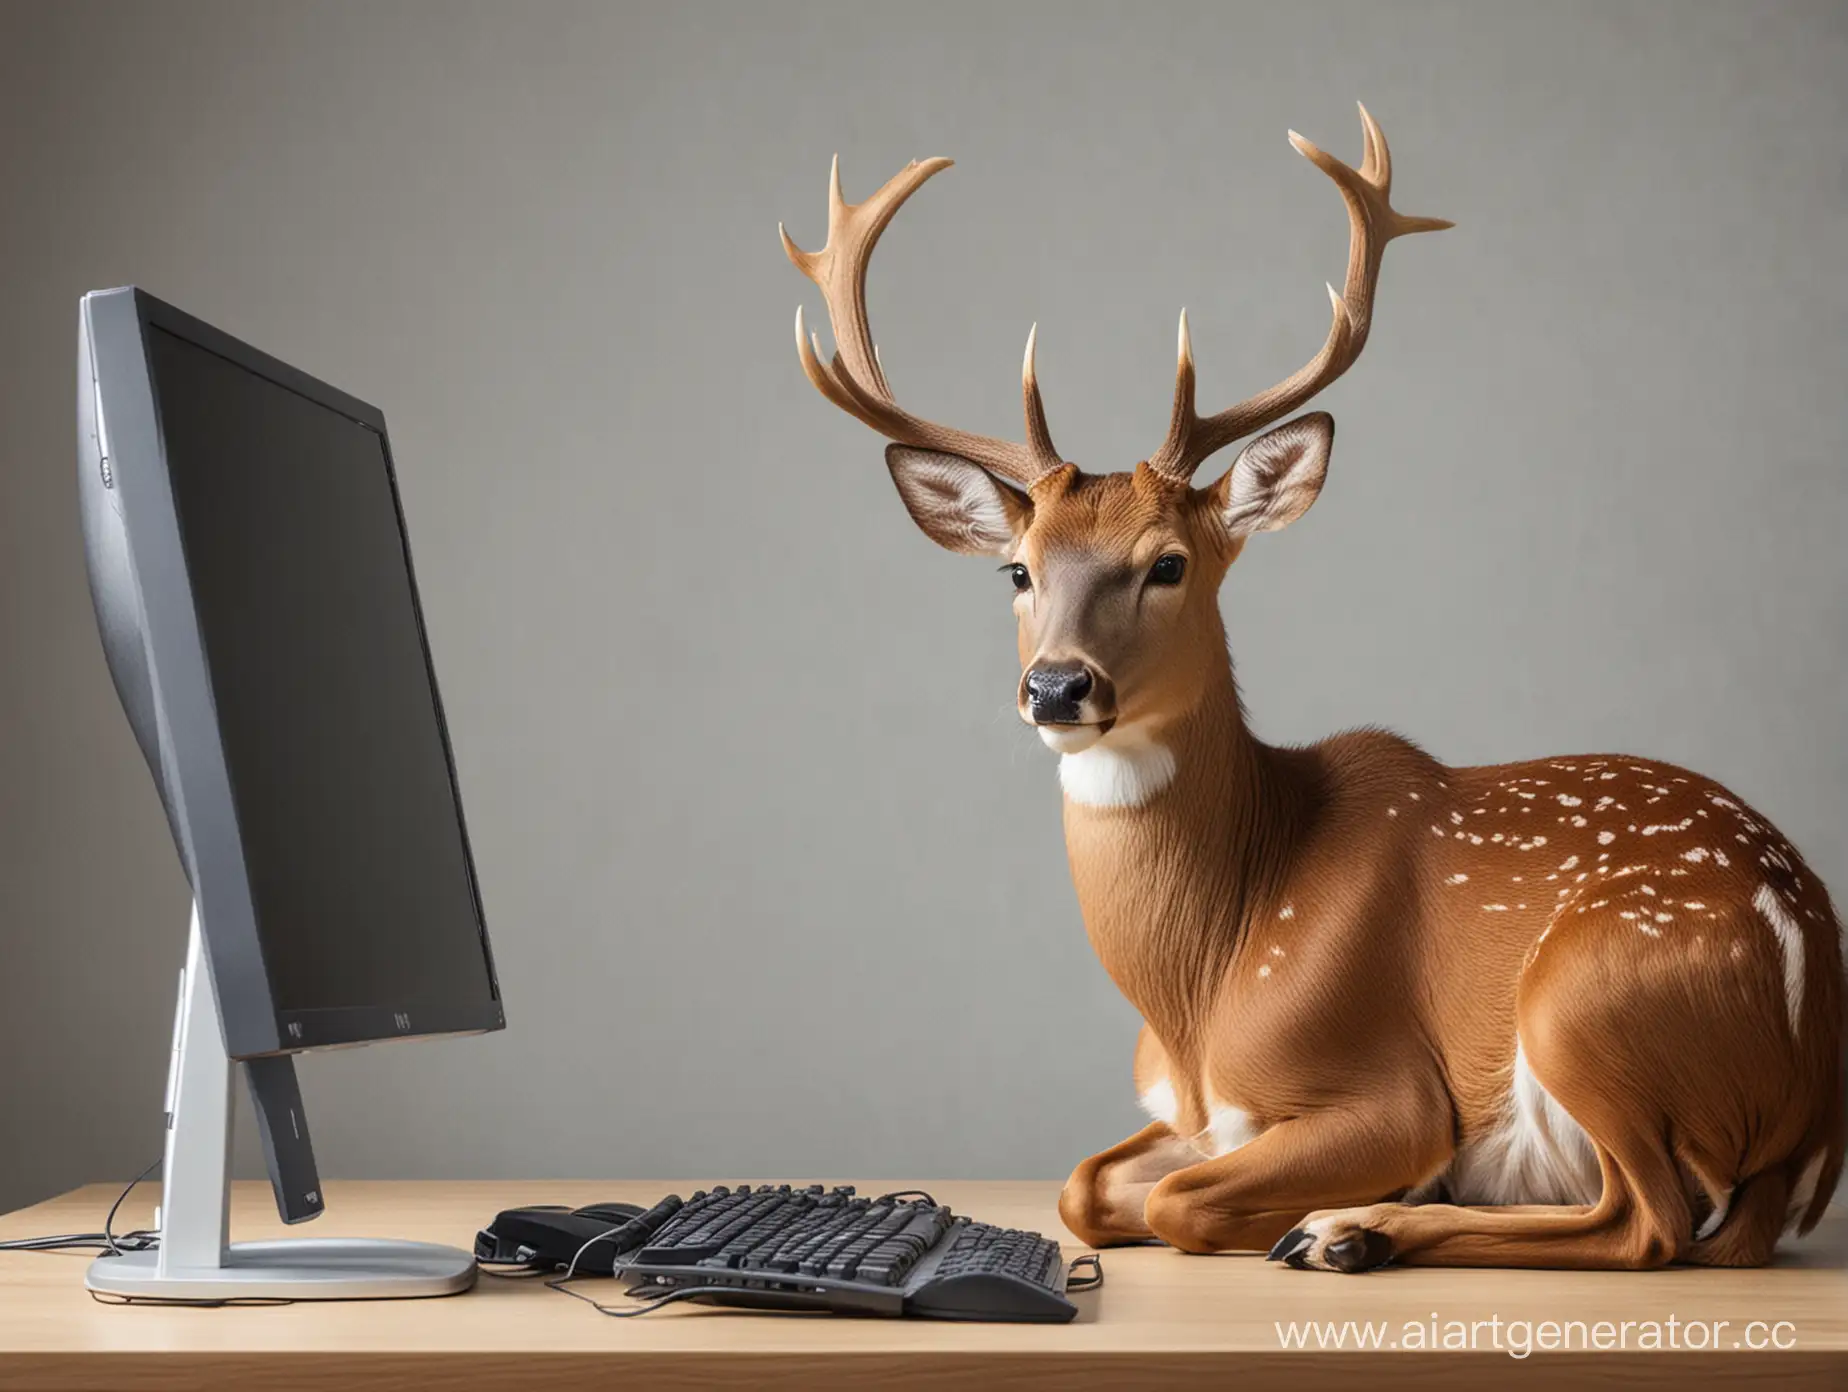 Deer-Working-Behind-Computer-Wildlife-in-the-Digital-Age